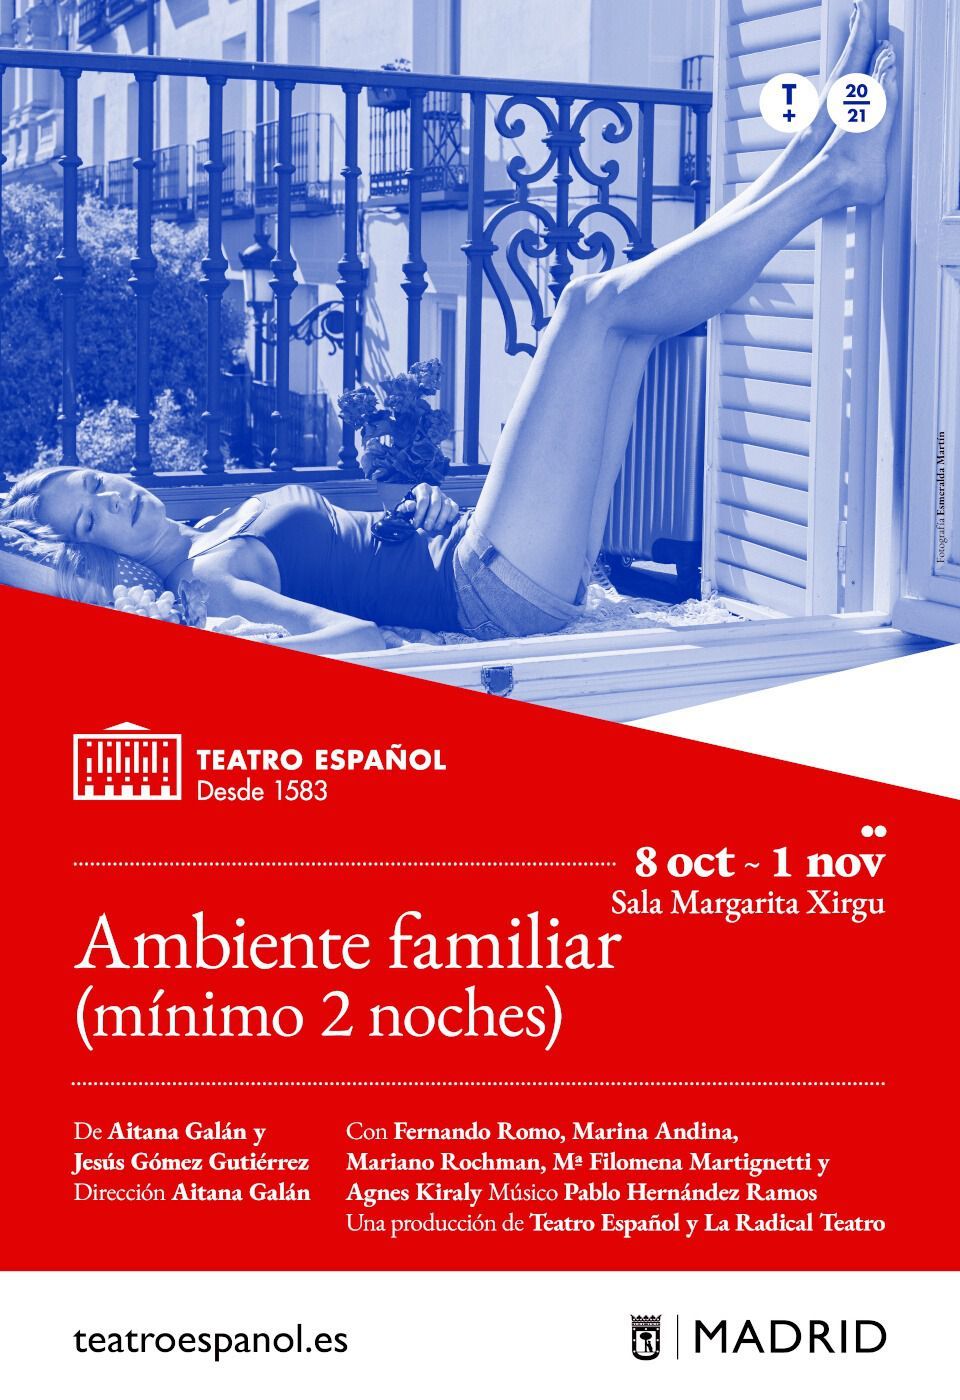 AMBIENTE FAMILIAR (Mínimo 2 noches) en el Teatro Español